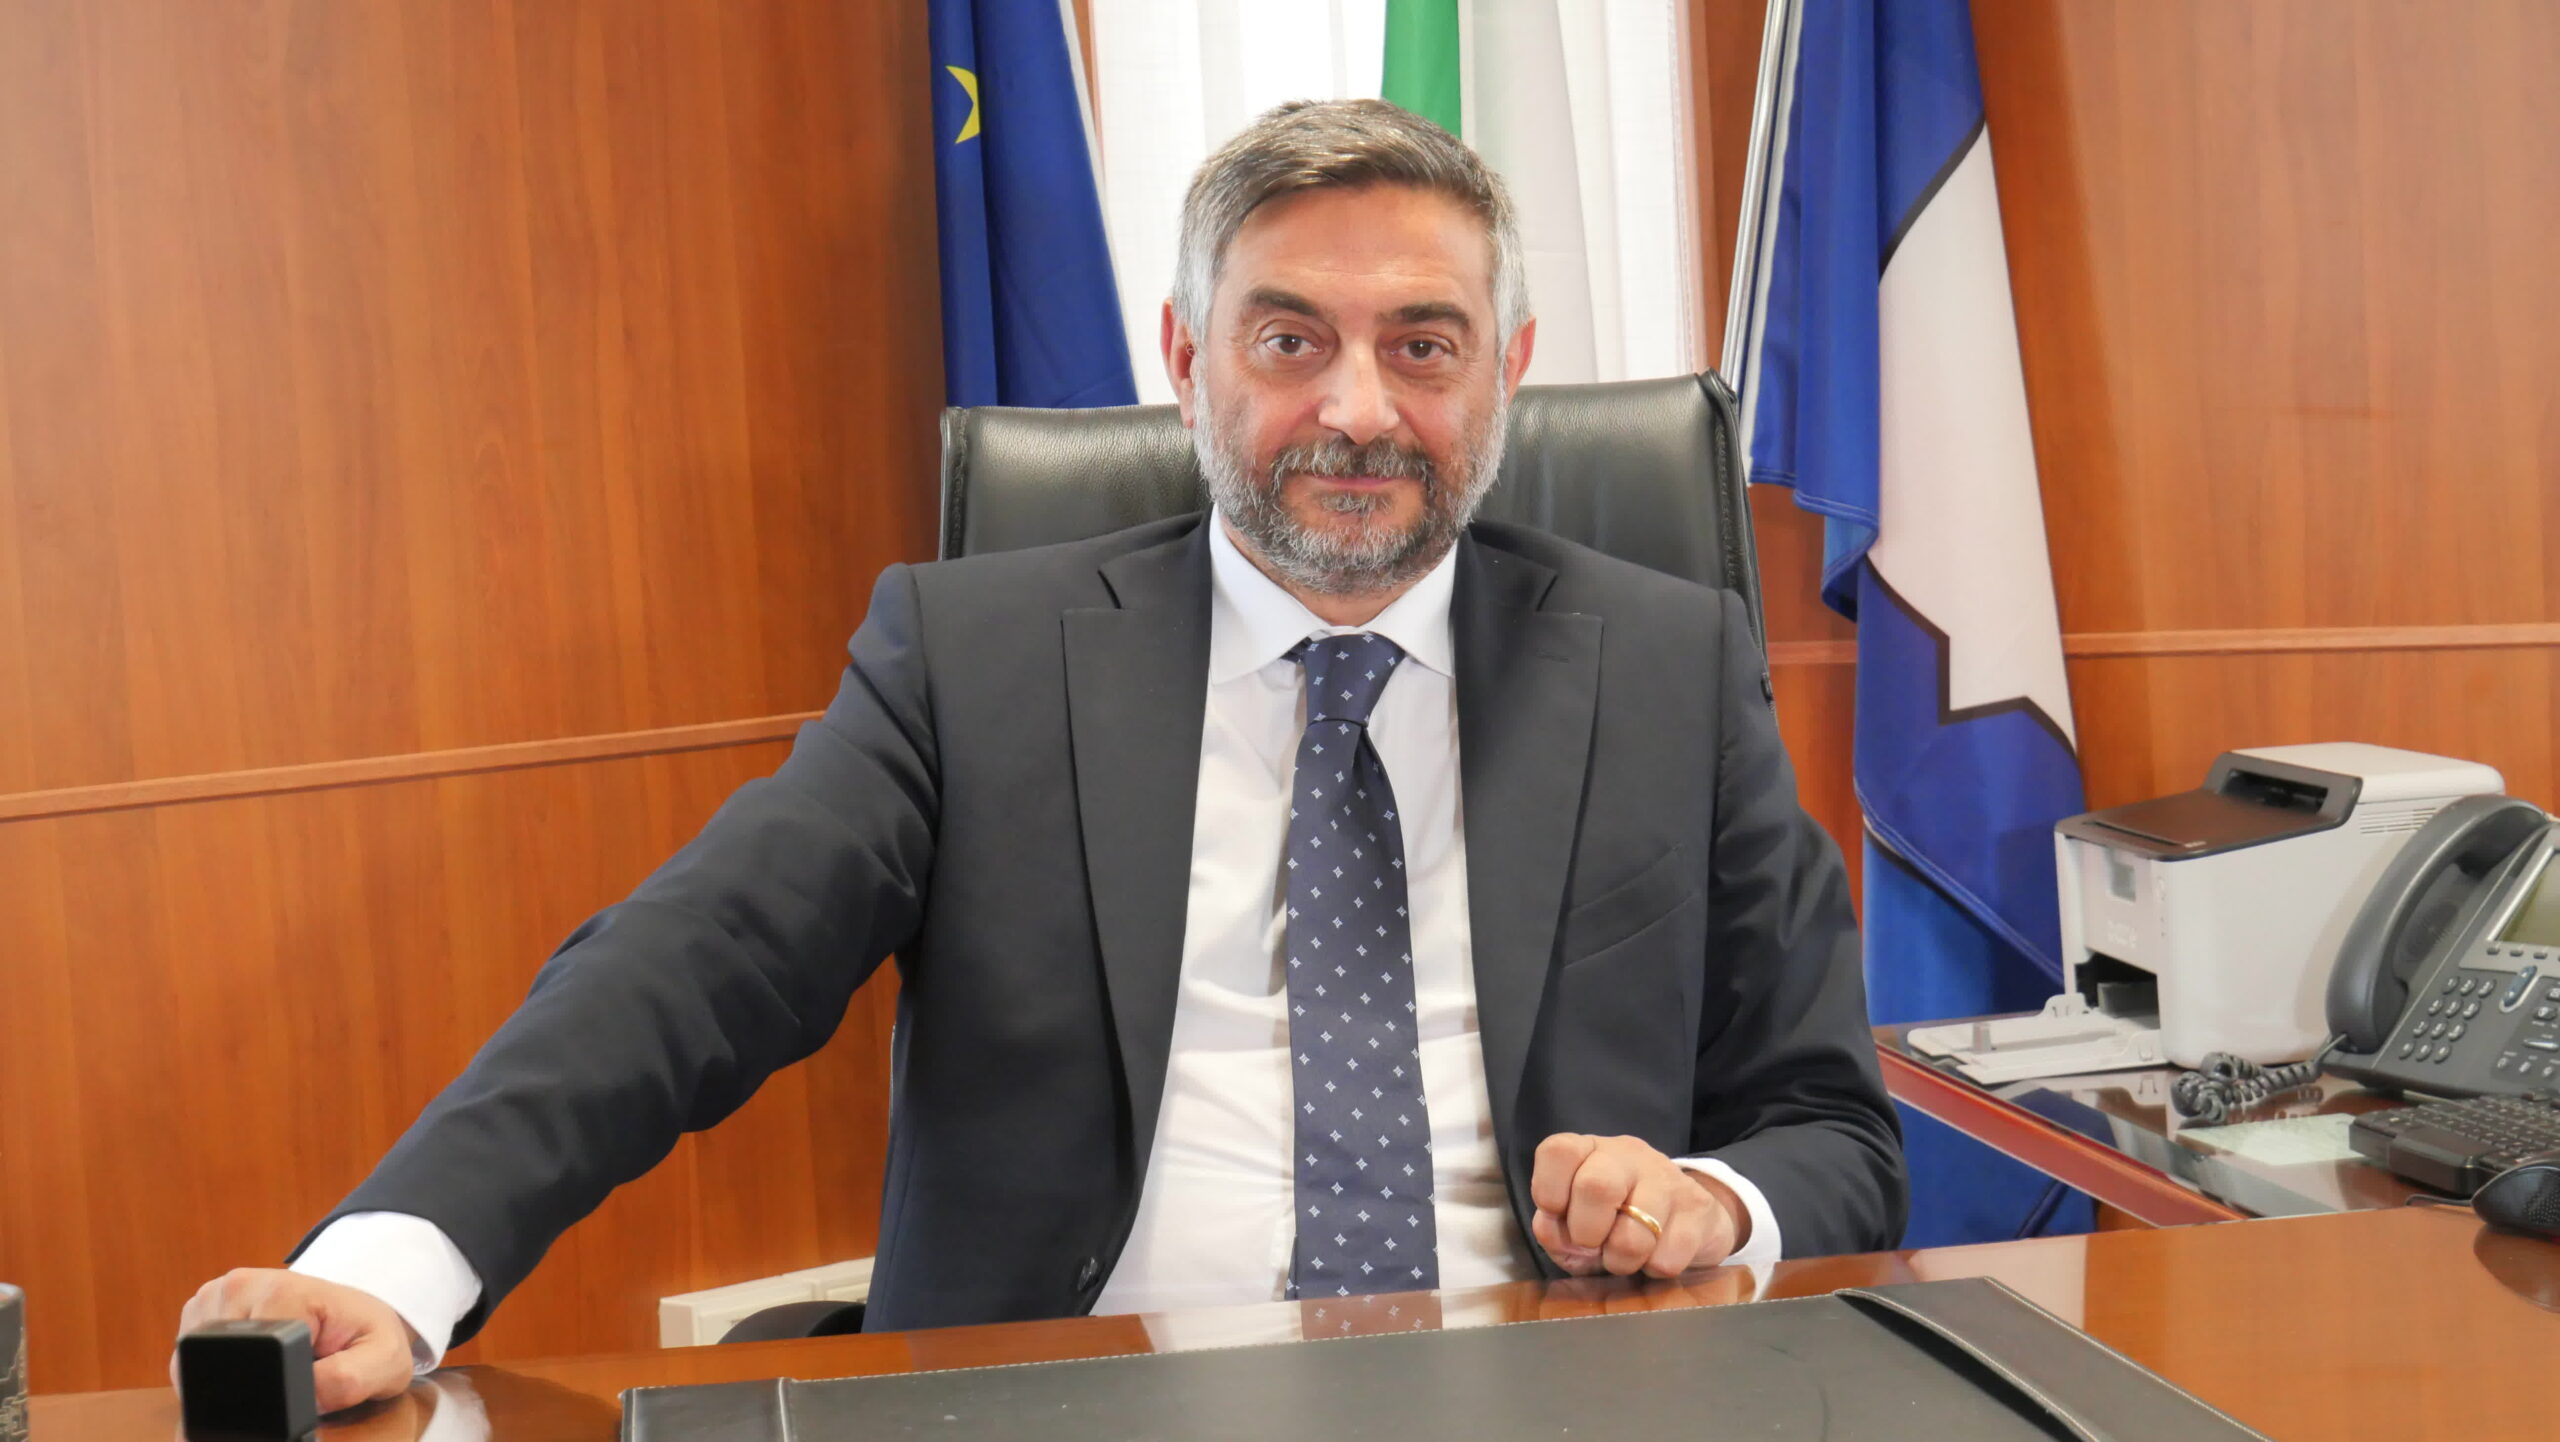 La lotta per la giustizia: Corrado Matera denuncia lo scandalo del  Tribunale di Sala Consilina e chiede il ripristino immediato - InfoCilento